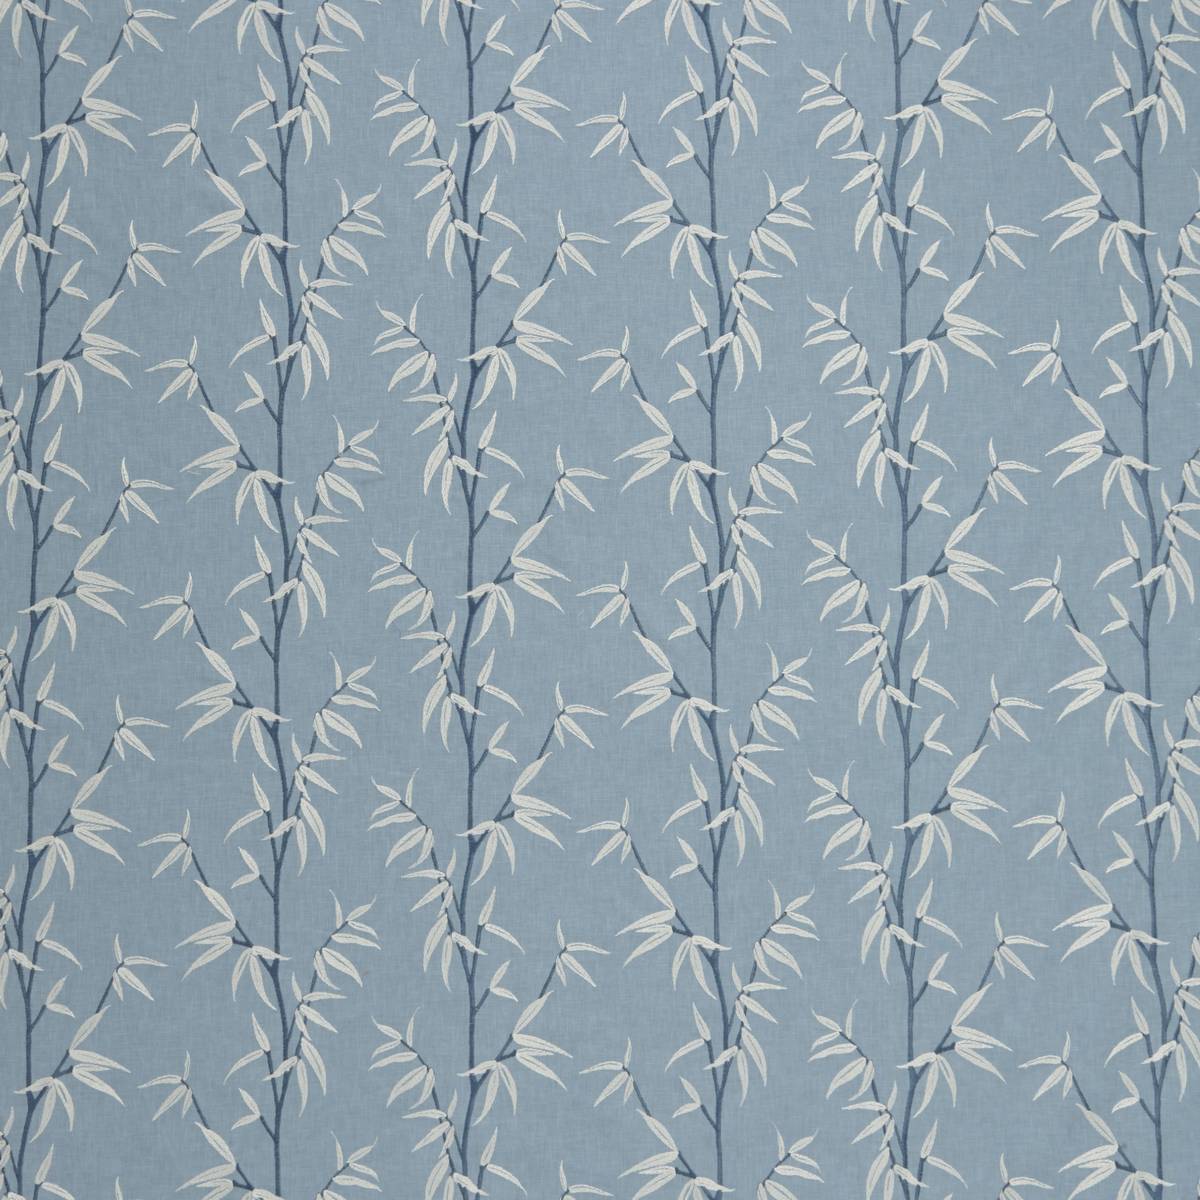 Sumi Delft Fabric by iLiv